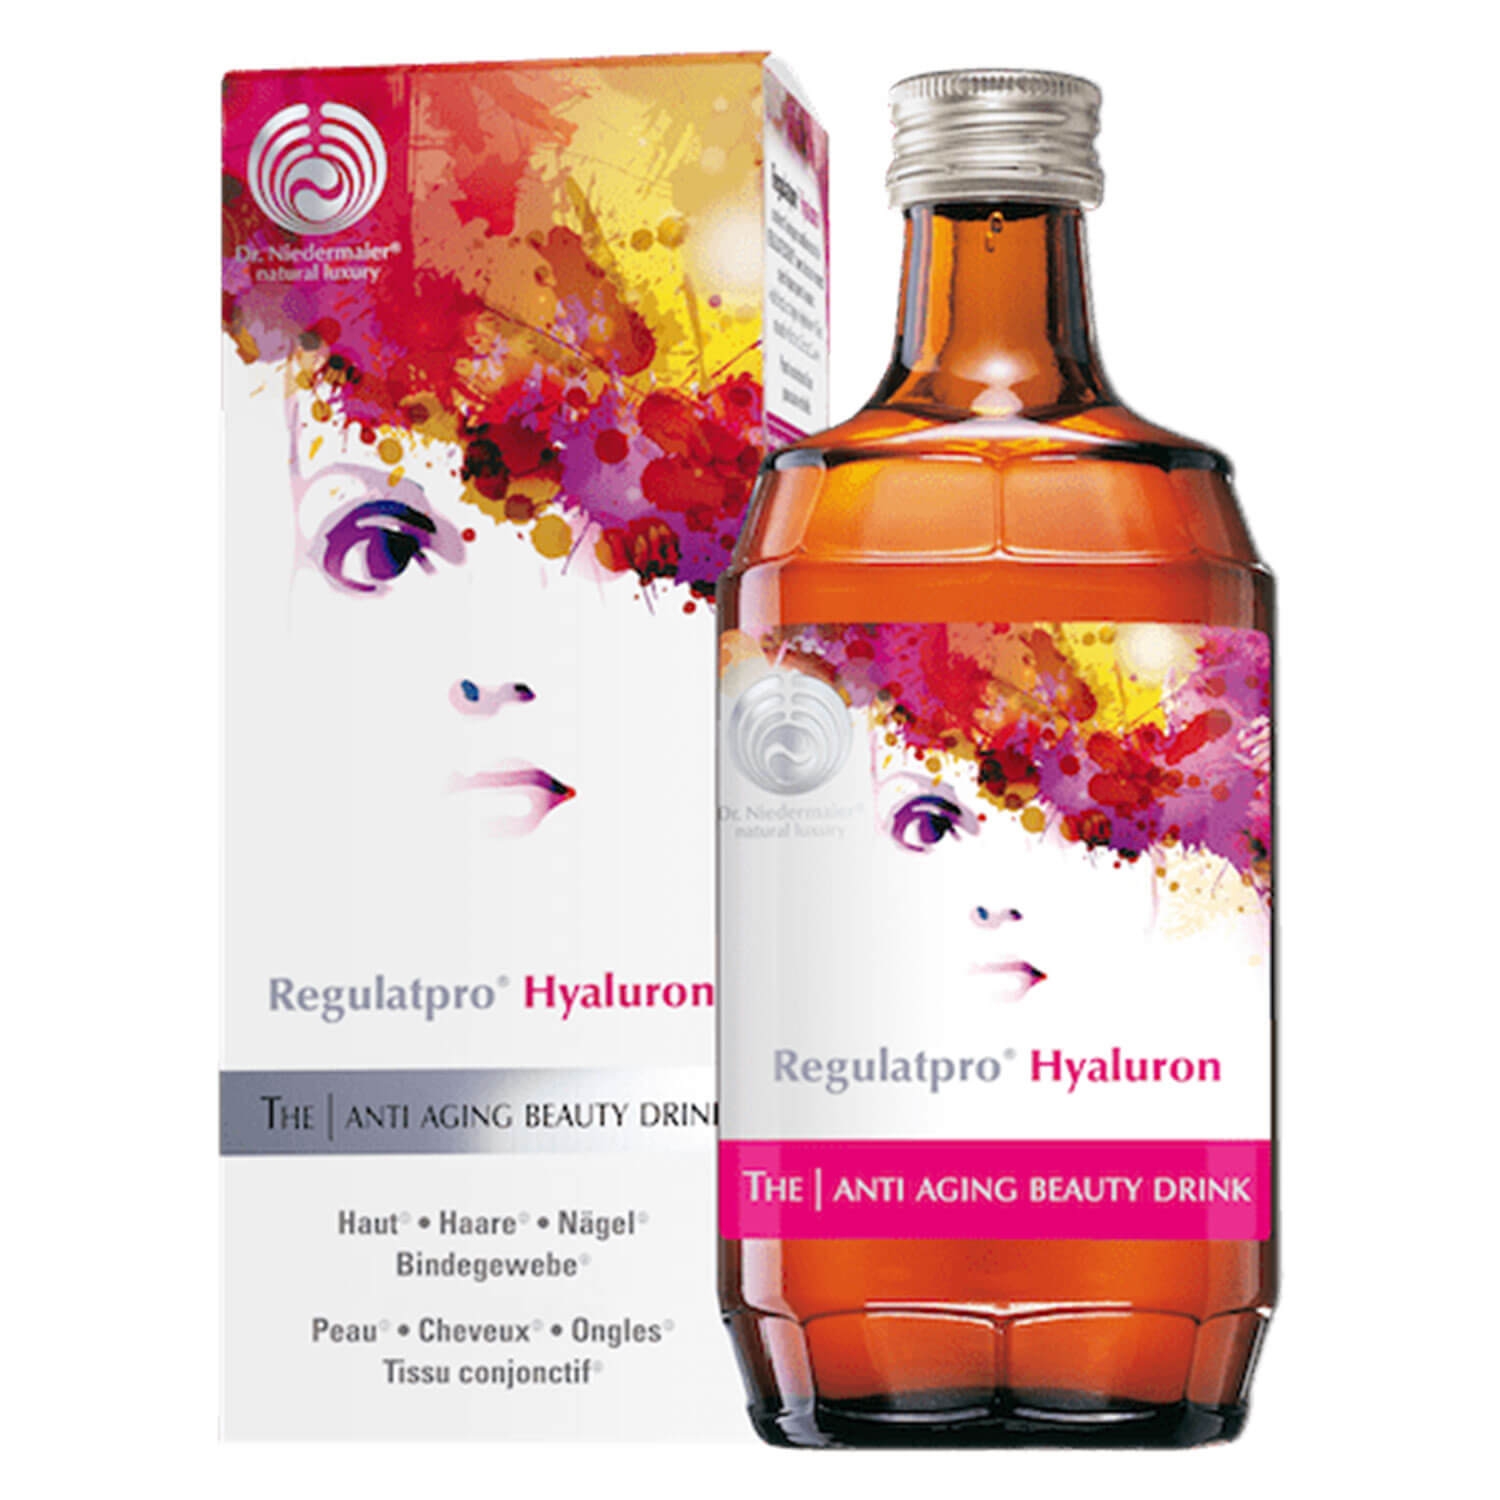 Produktbild von Regulatpro® - Hyaluron The Anti Aging Beauty Drink